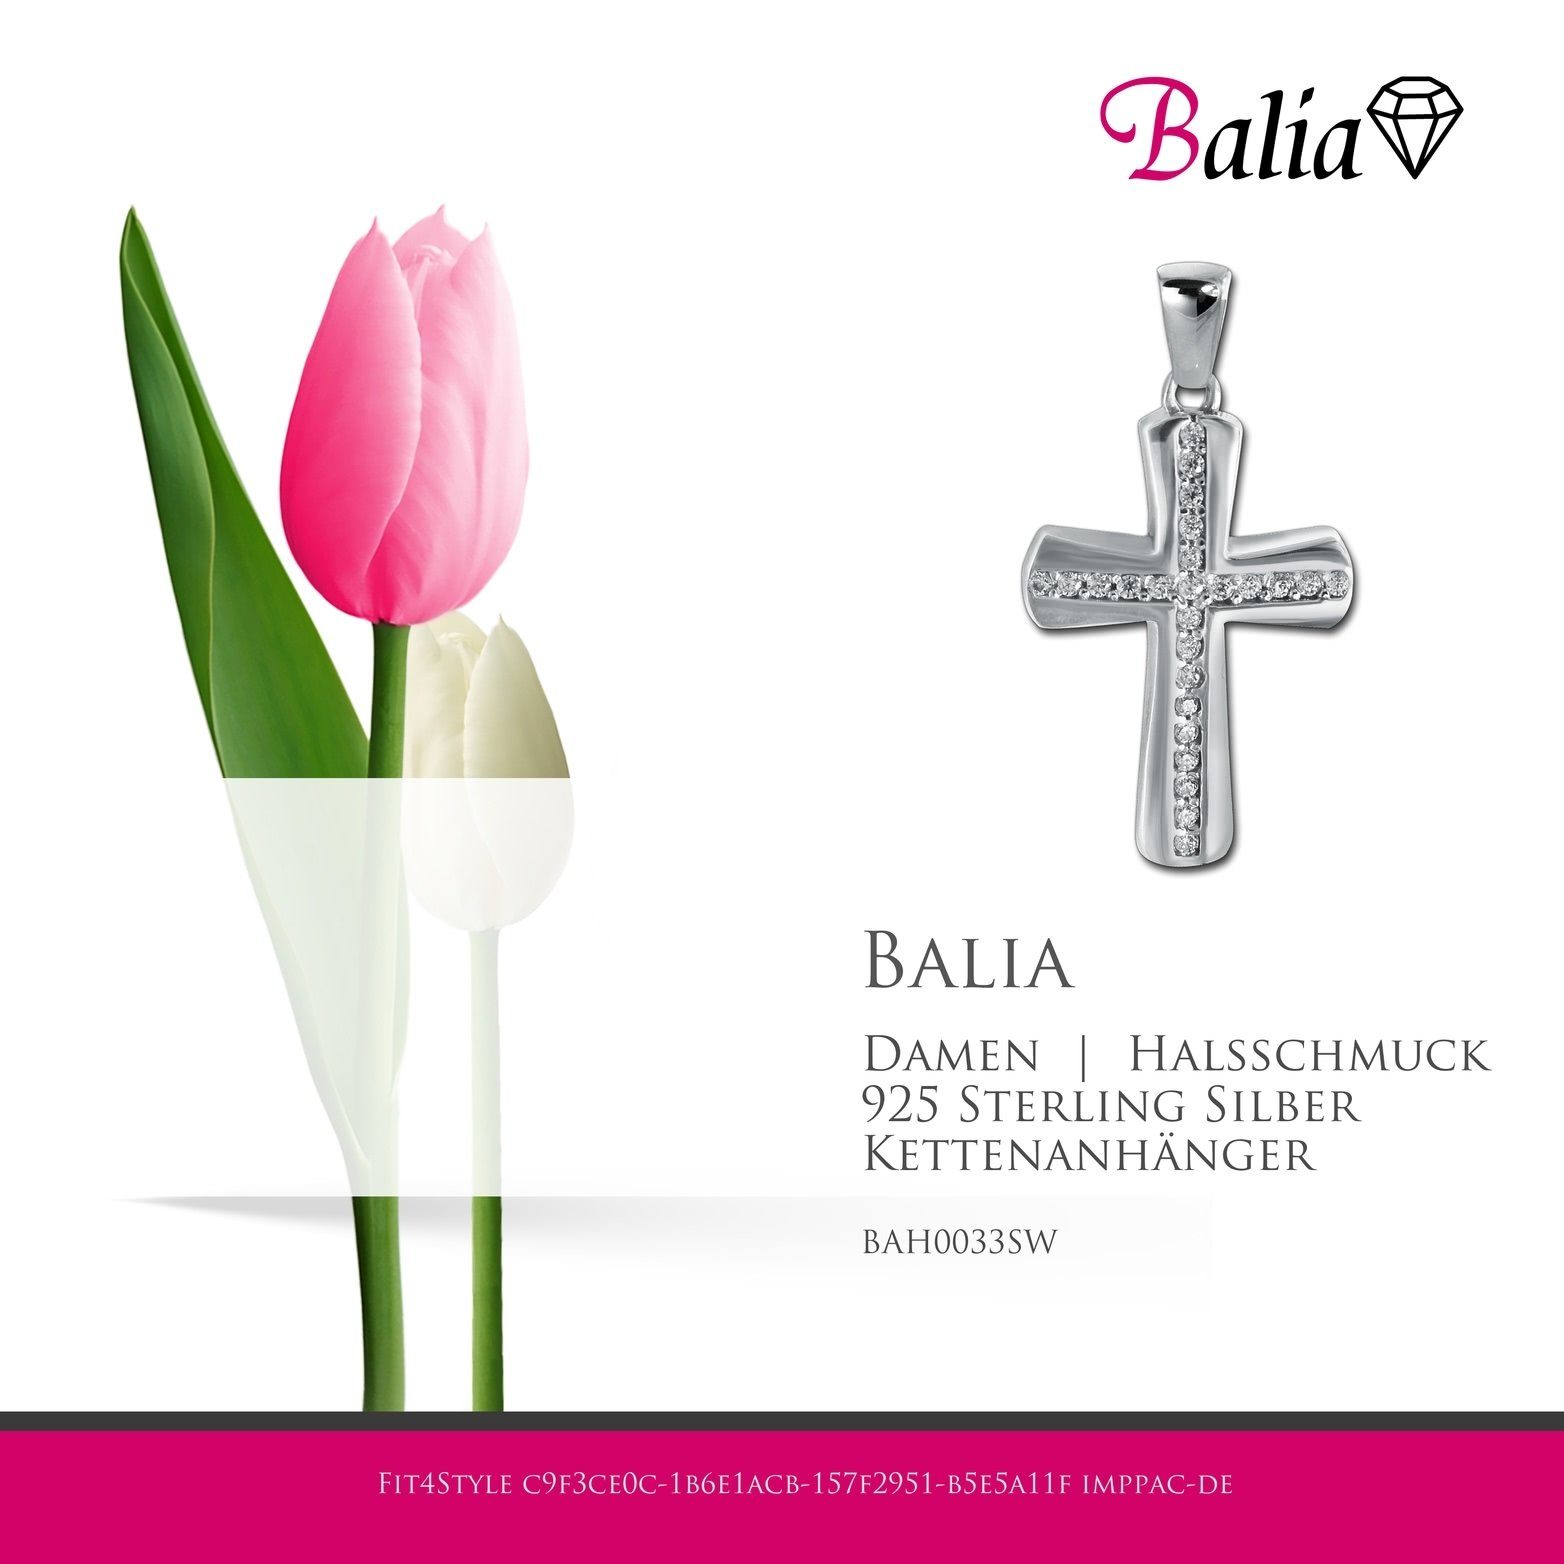 2,6cm, Kettenanhänger (Kreuz) Kettenanhänger Damen 925 Sterling Balia ca. 925, Balia für Kettenanhänger Silber